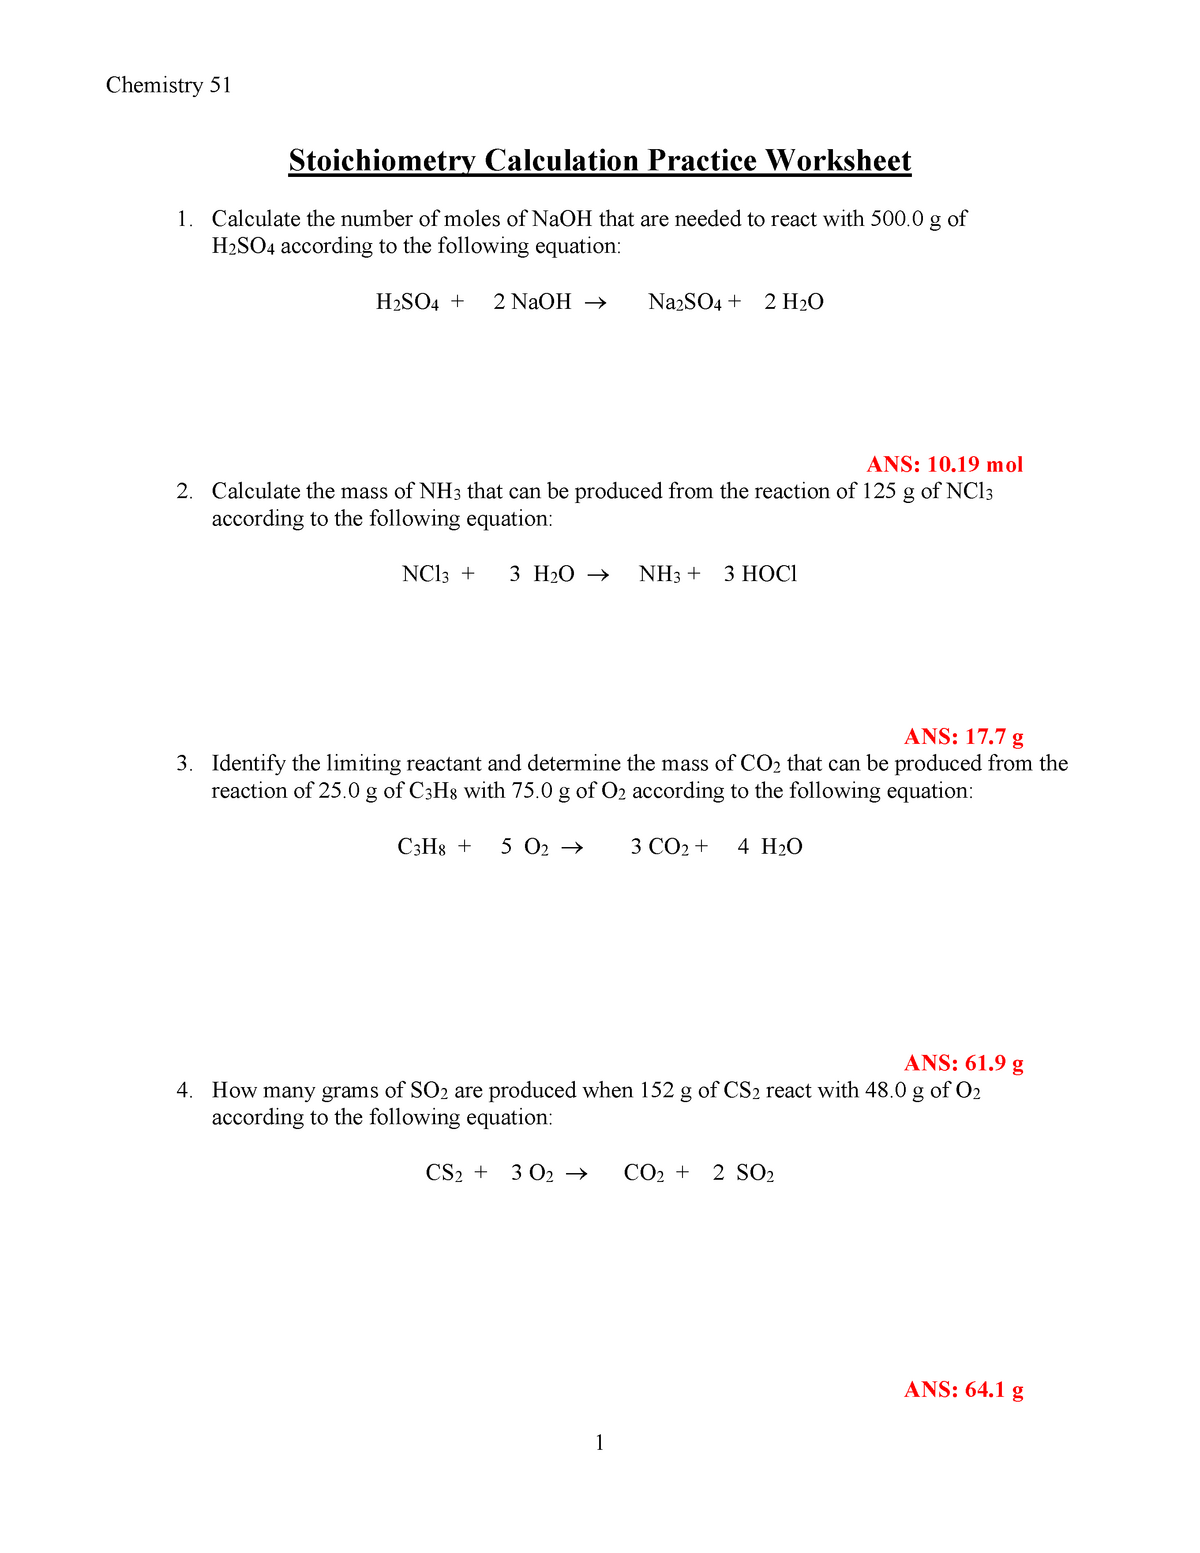 Stoichiometry Worksheet - Chemistry 1111 11 Stoichiometry Calculation Inside Stoichiometry Worksheet Answer Key